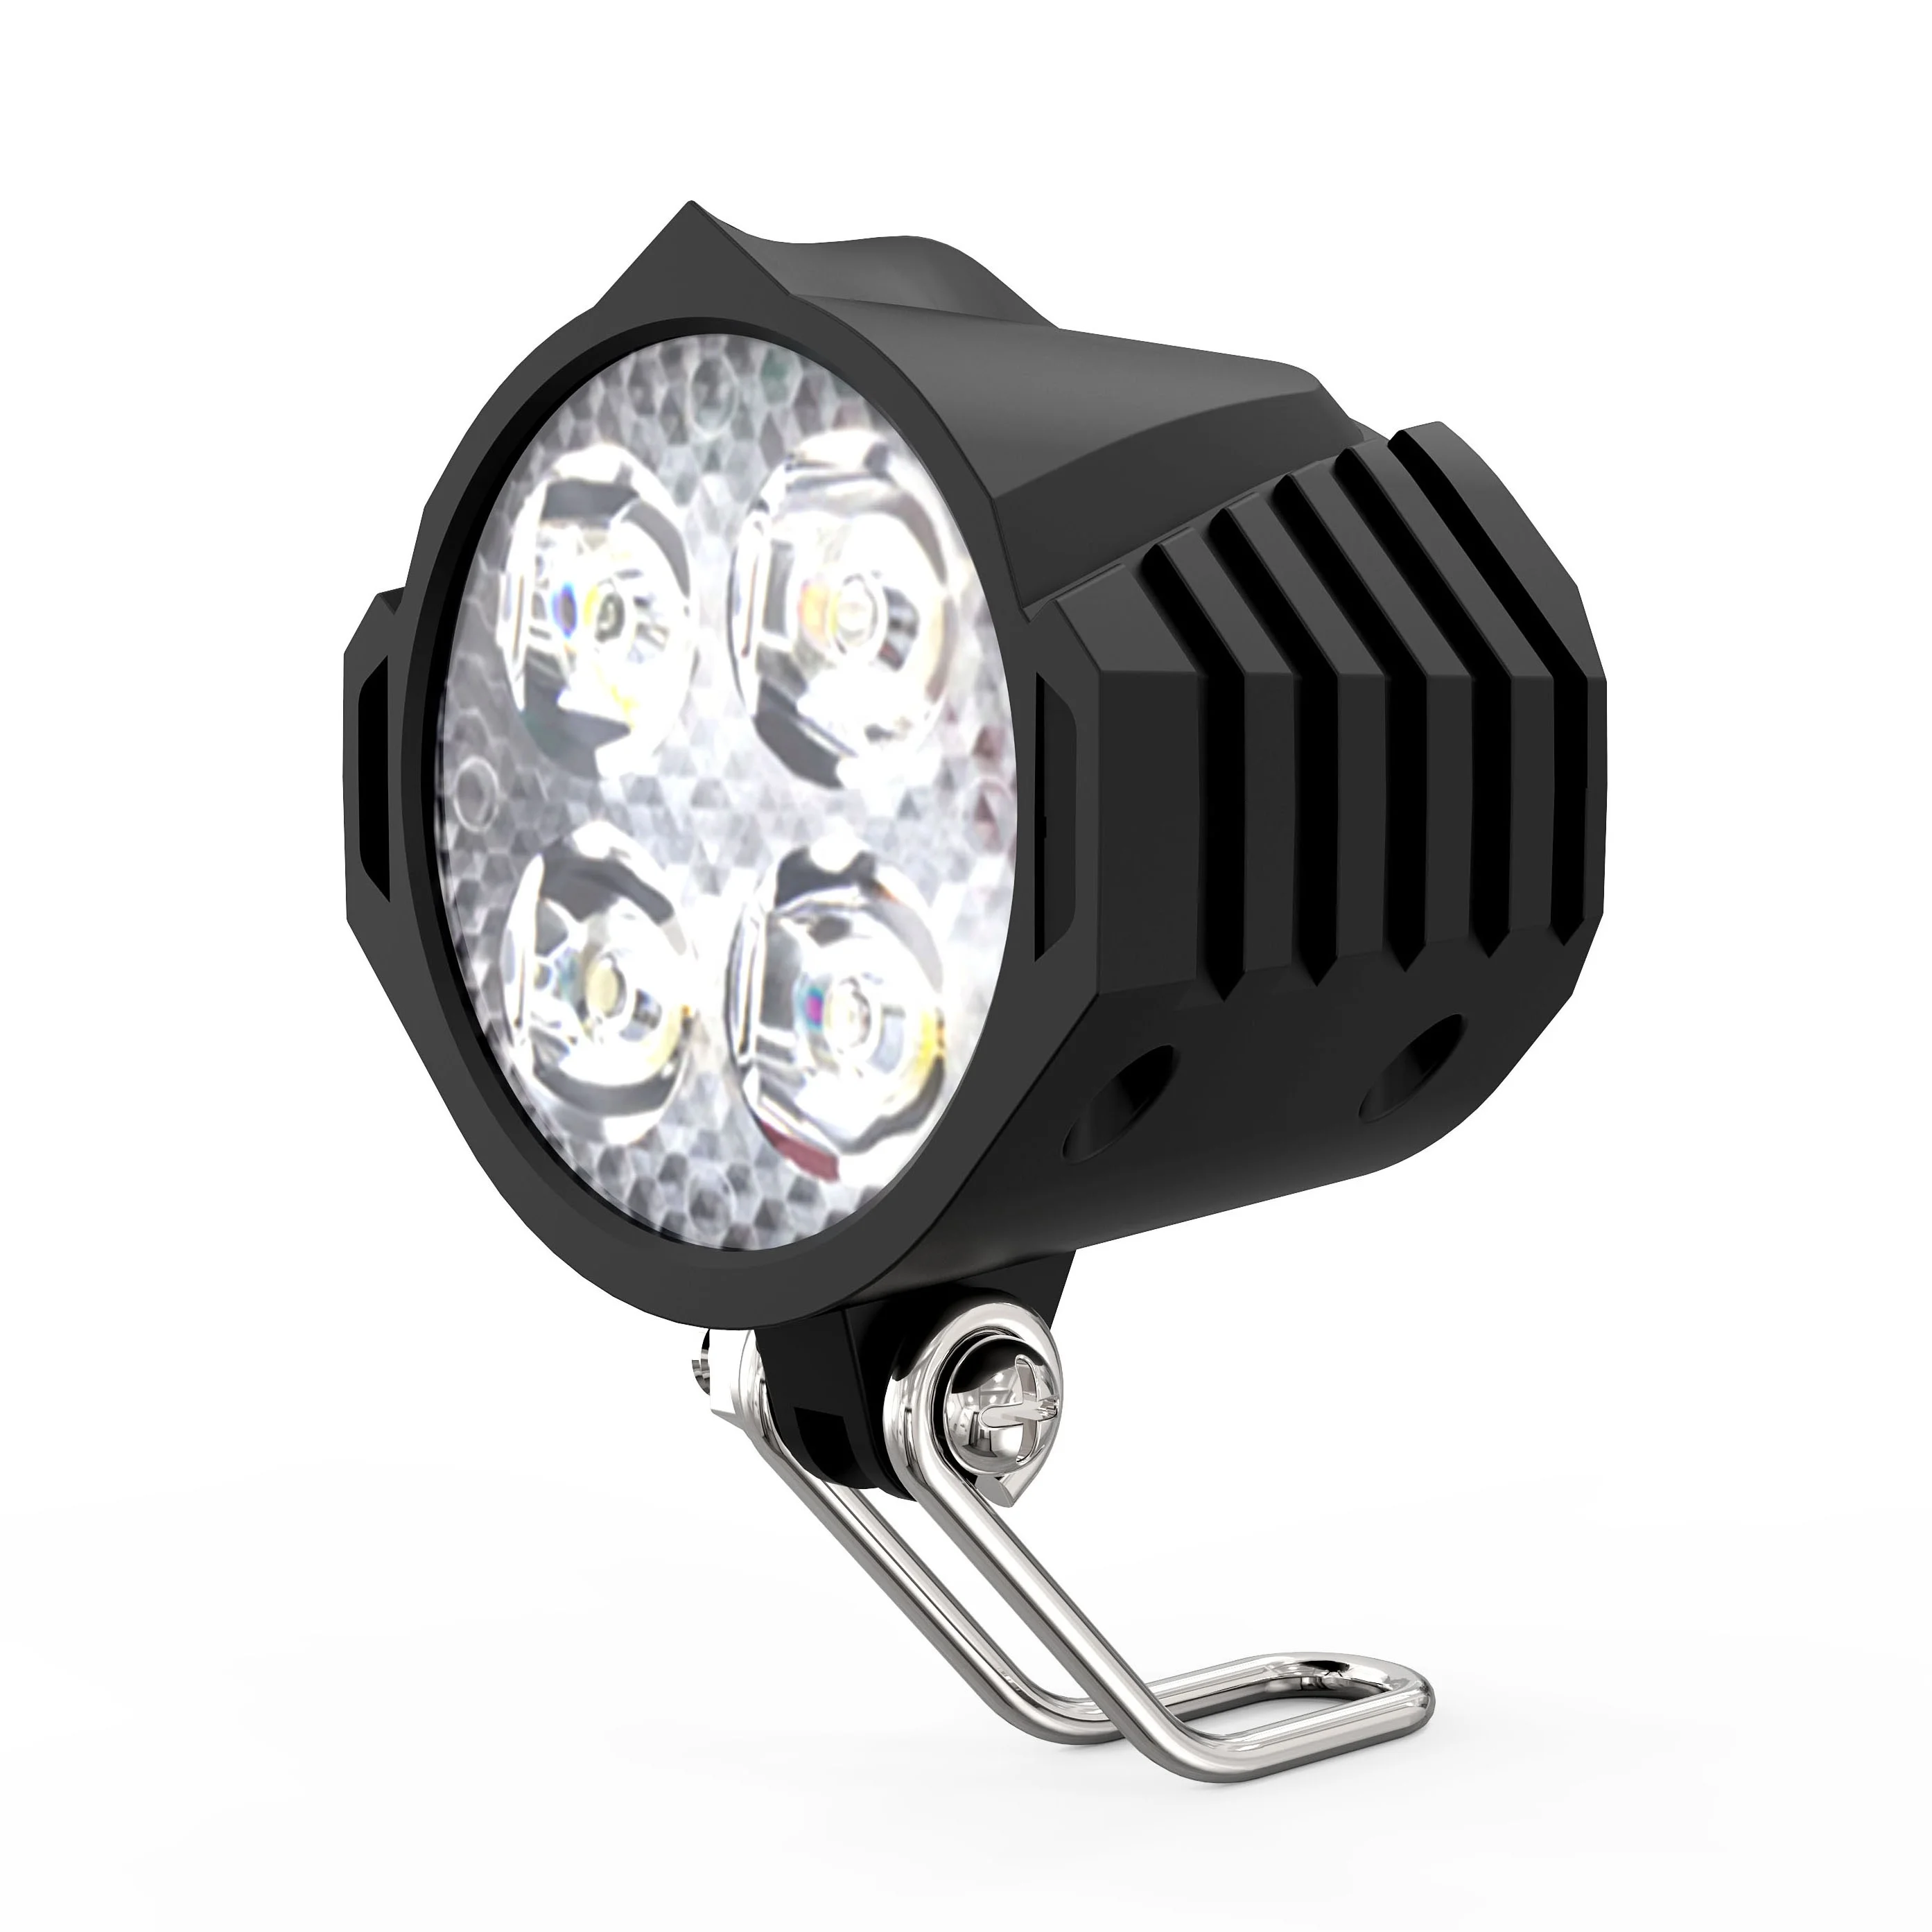 

SZFJ factory Electric Bicycle 36V 48V LED Headlight 300 Lumen E-Bike Light, Black